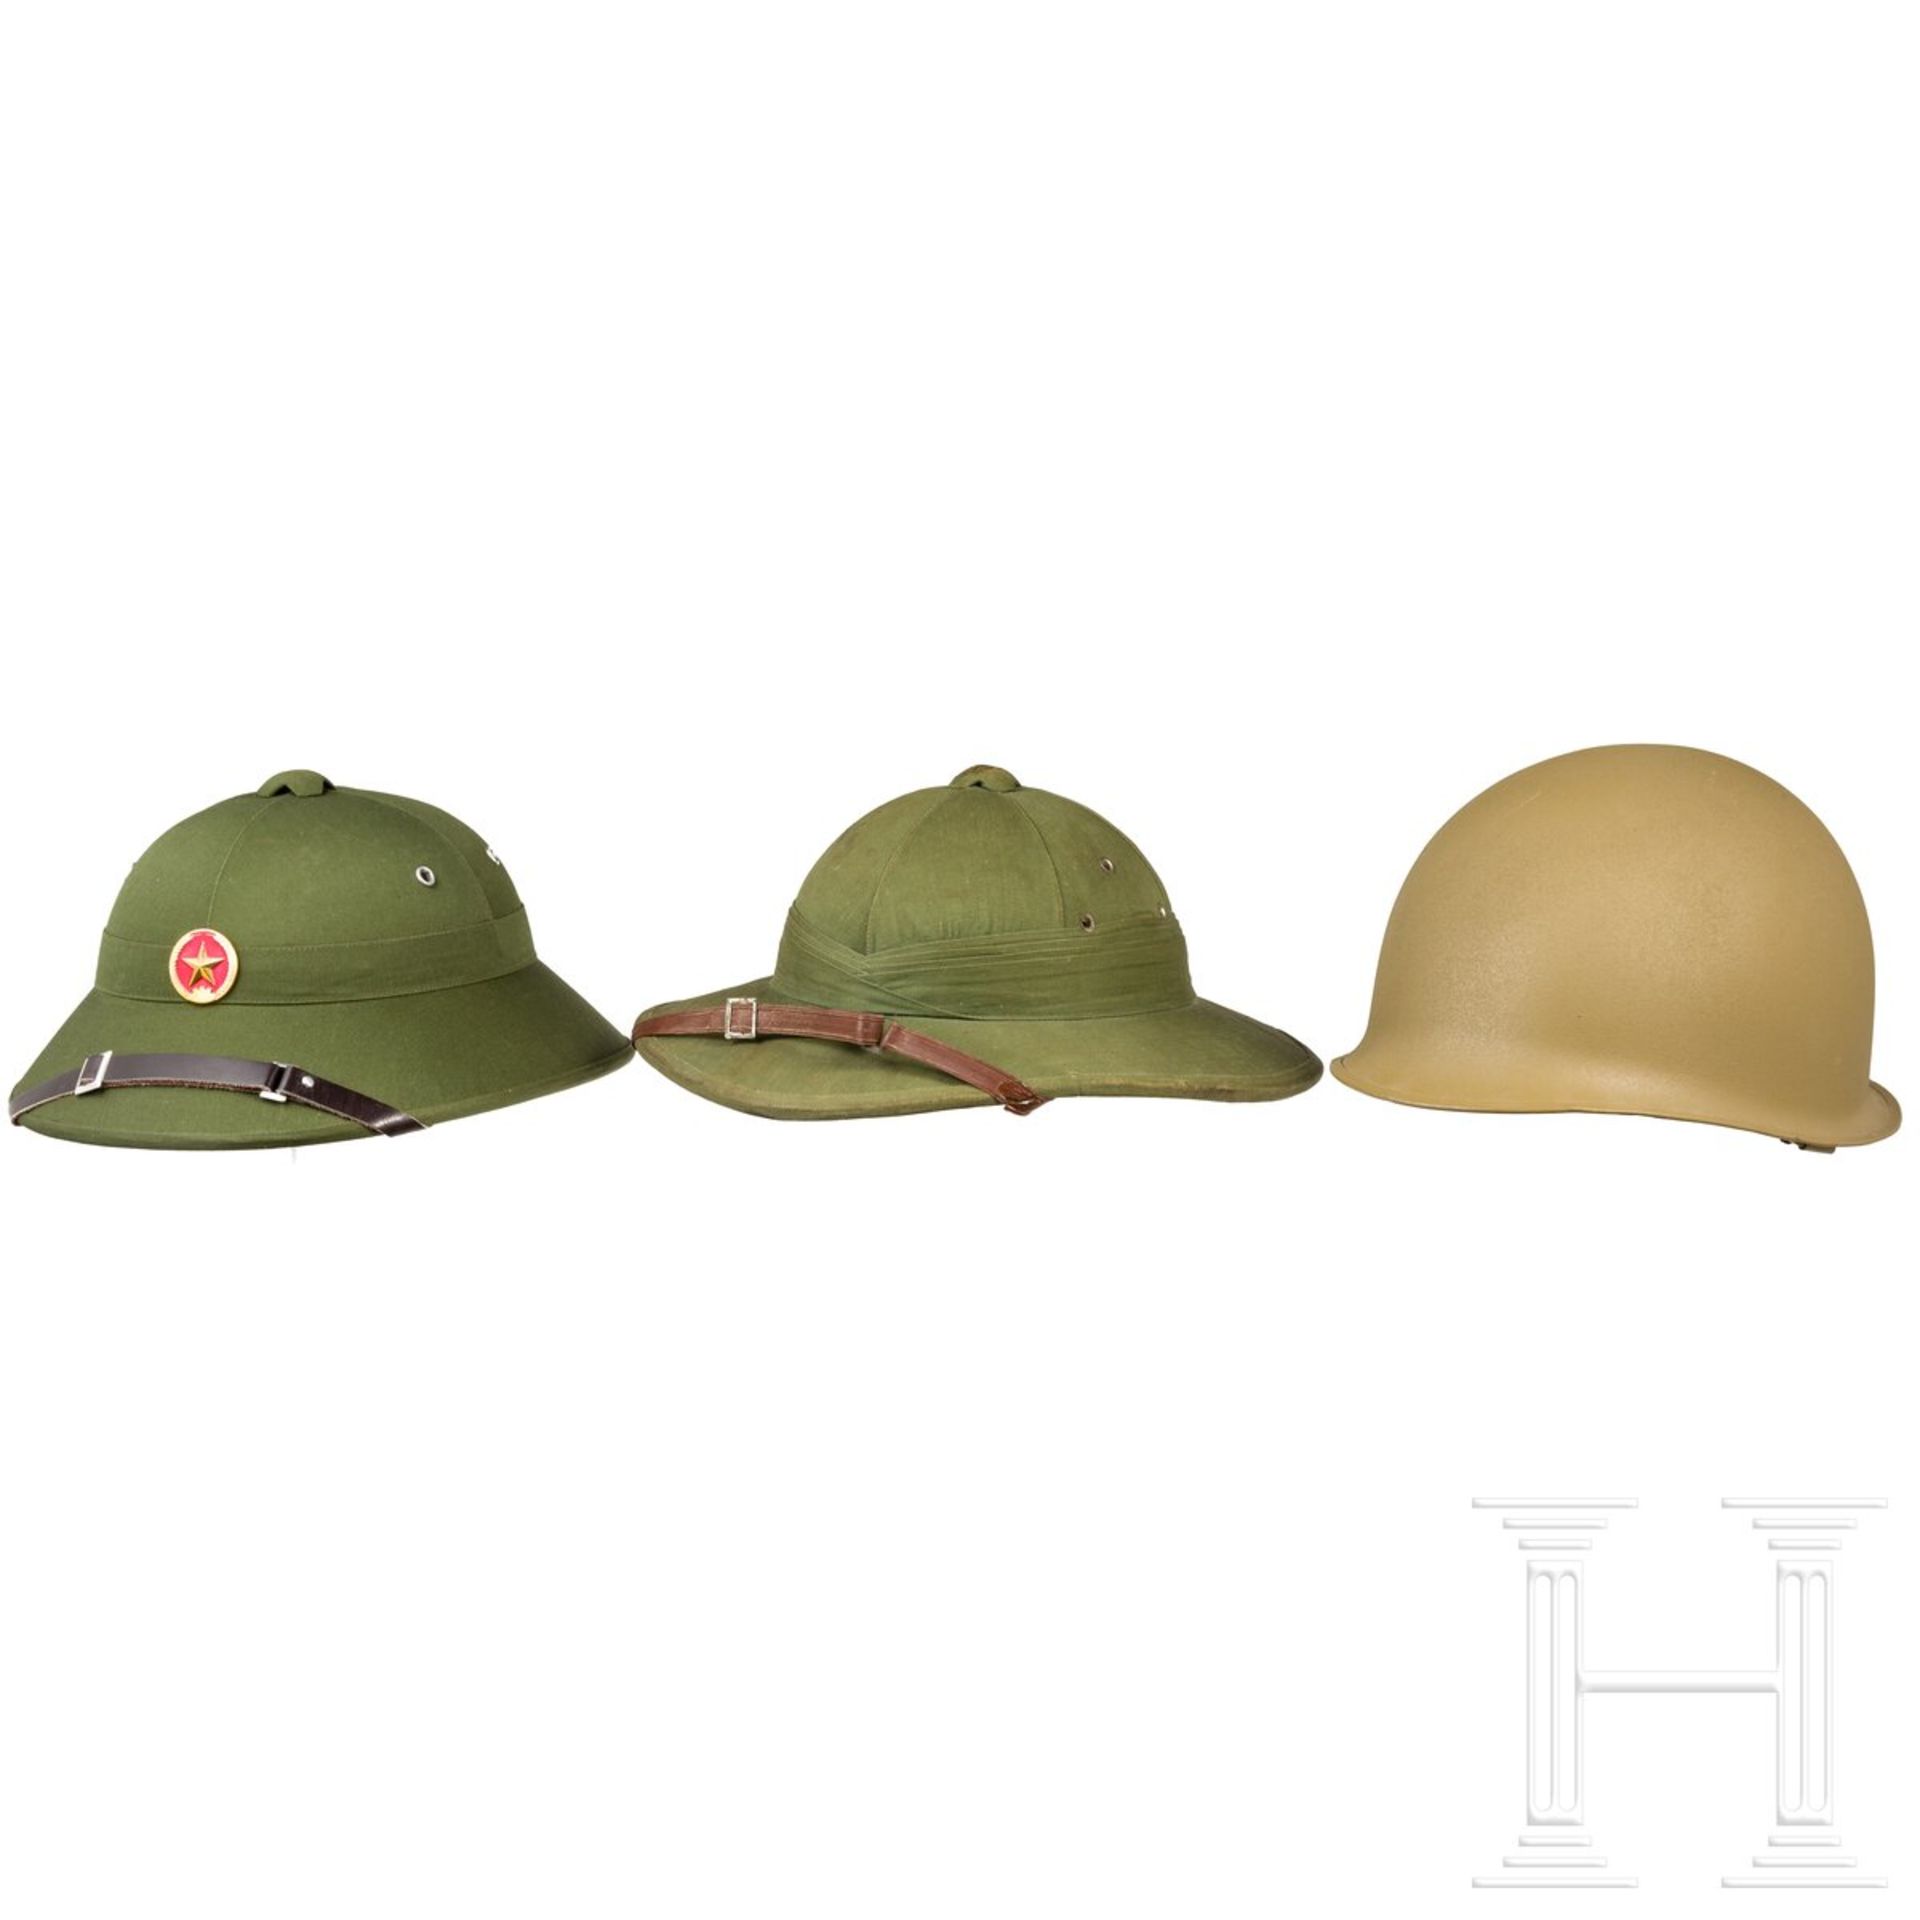 Drei Helme für Dienst in tropischen Gebieten, 2. Hälfte 20. Jhdt.